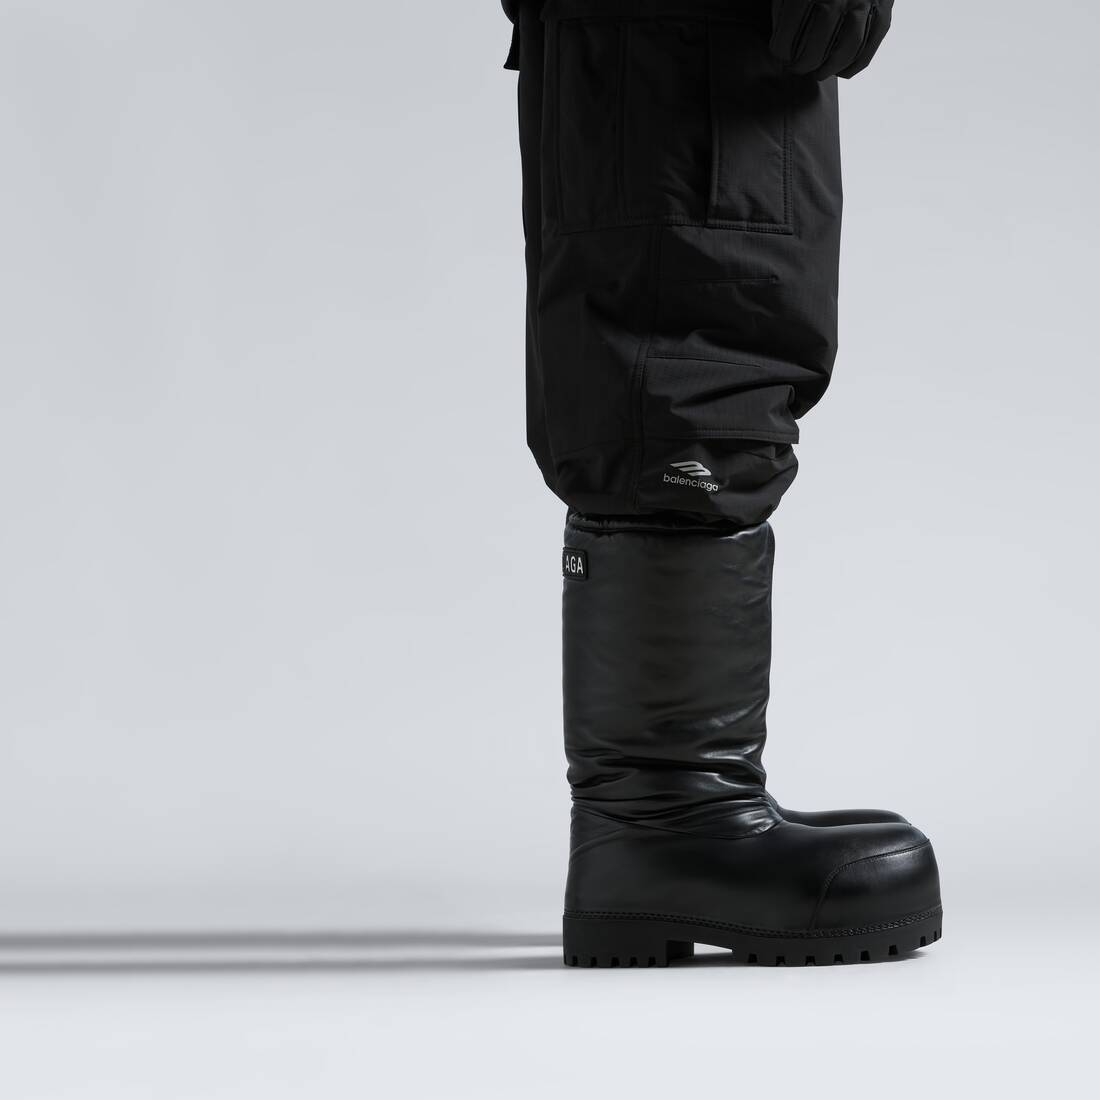 Men's Skiwear - Alaska High Boot in Black | Balenciaga NL